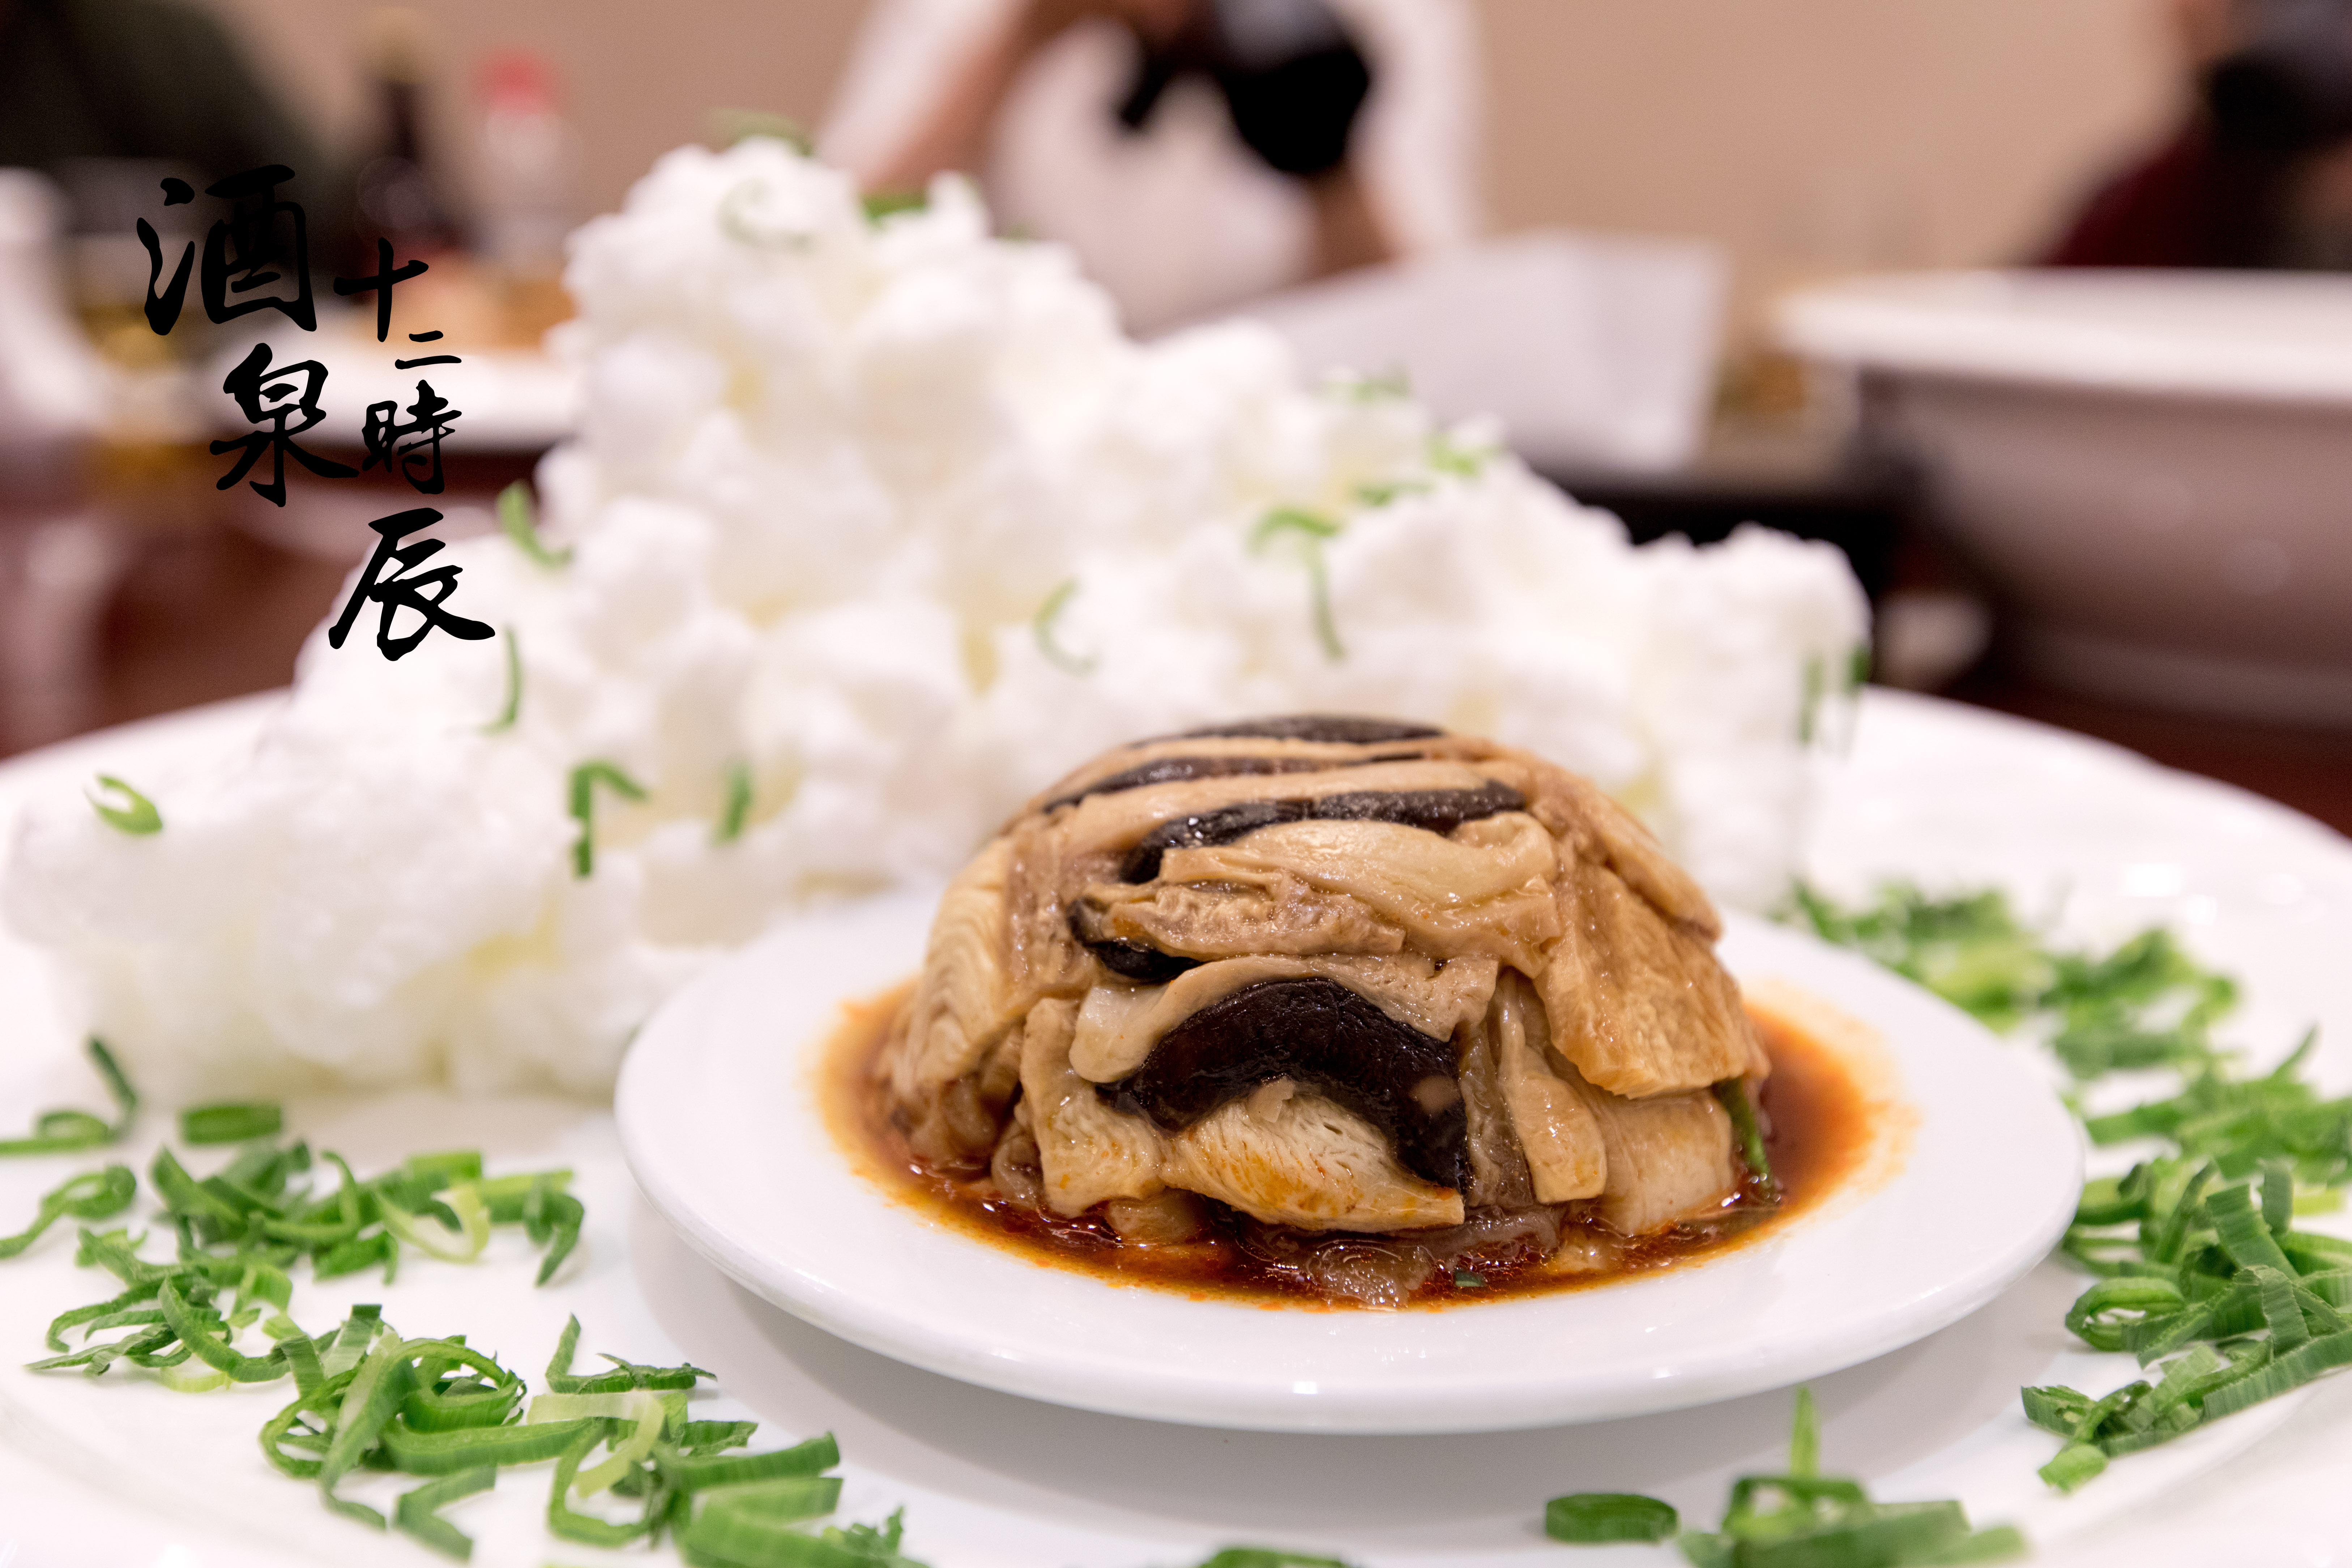 雪山驼掌,又名丝路驼掌,是甘肃省酒泉地区的著名传统特色小吃之一